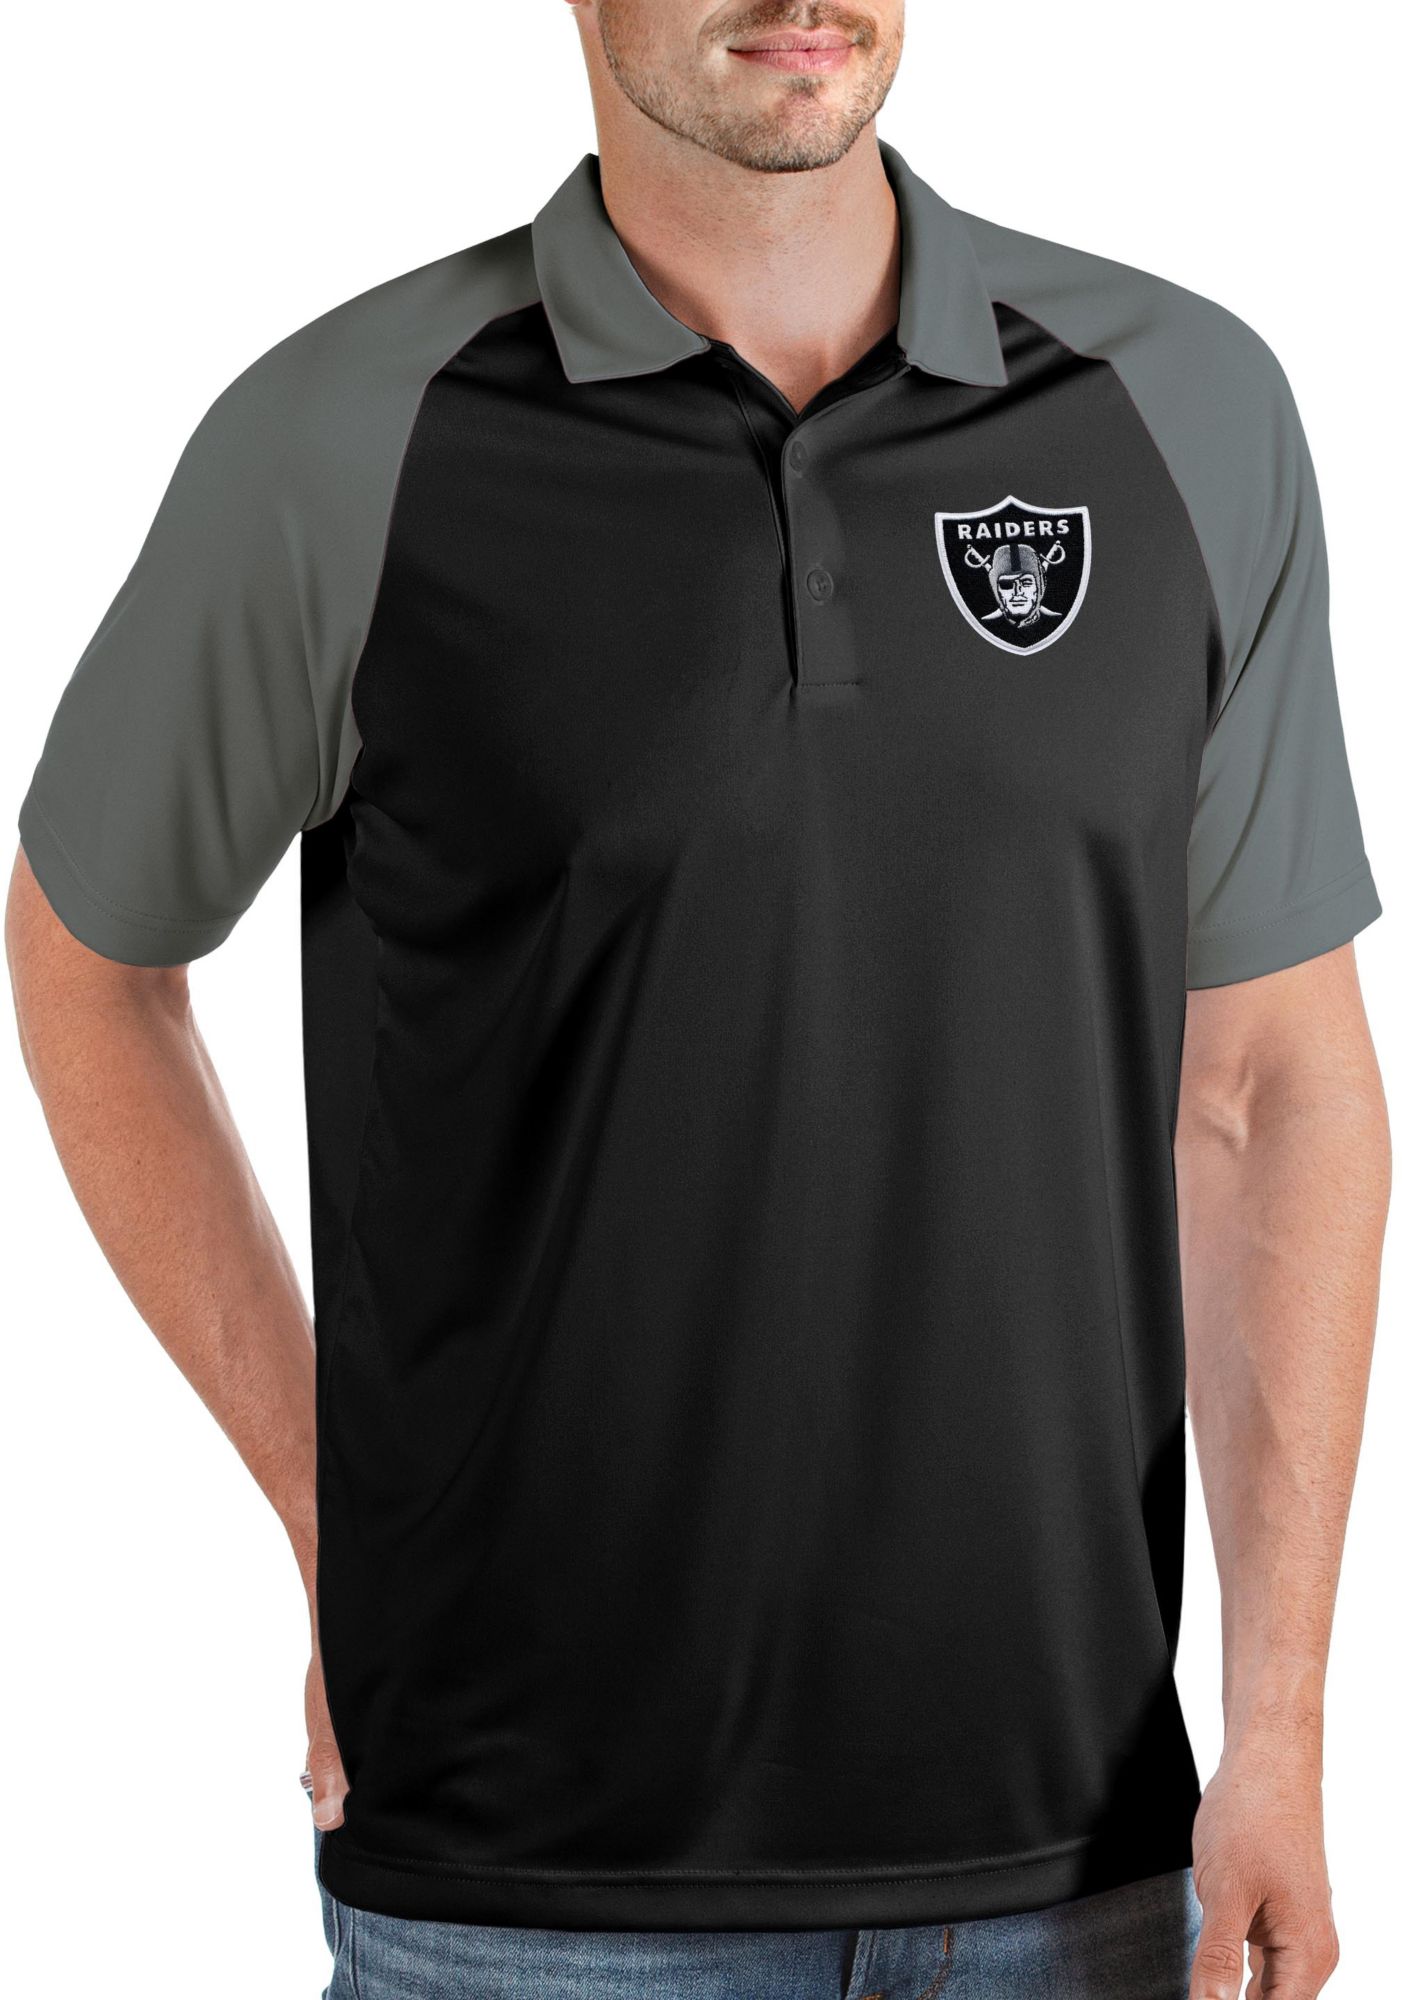 Mens NFL Team Apparel LAS VEGAS RAIDERS Football Polo Golf Shirt BLACK –